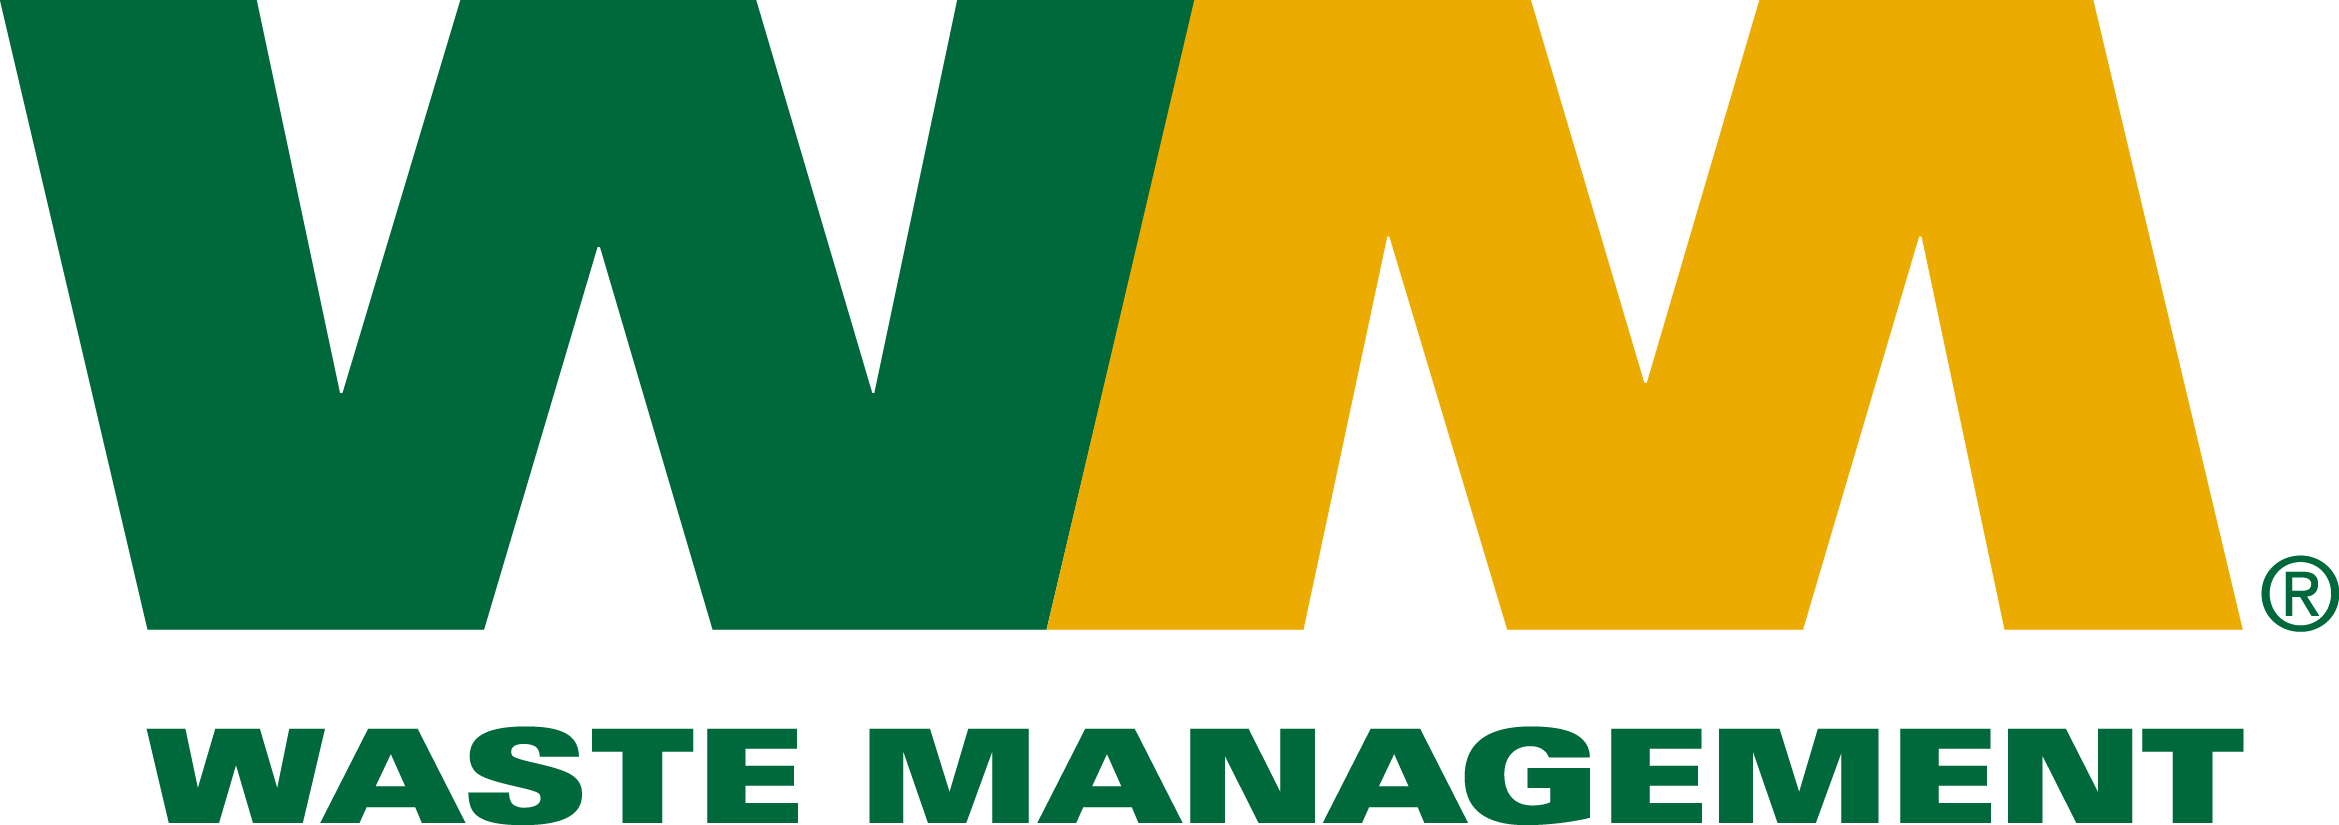 Waste Management logo.png